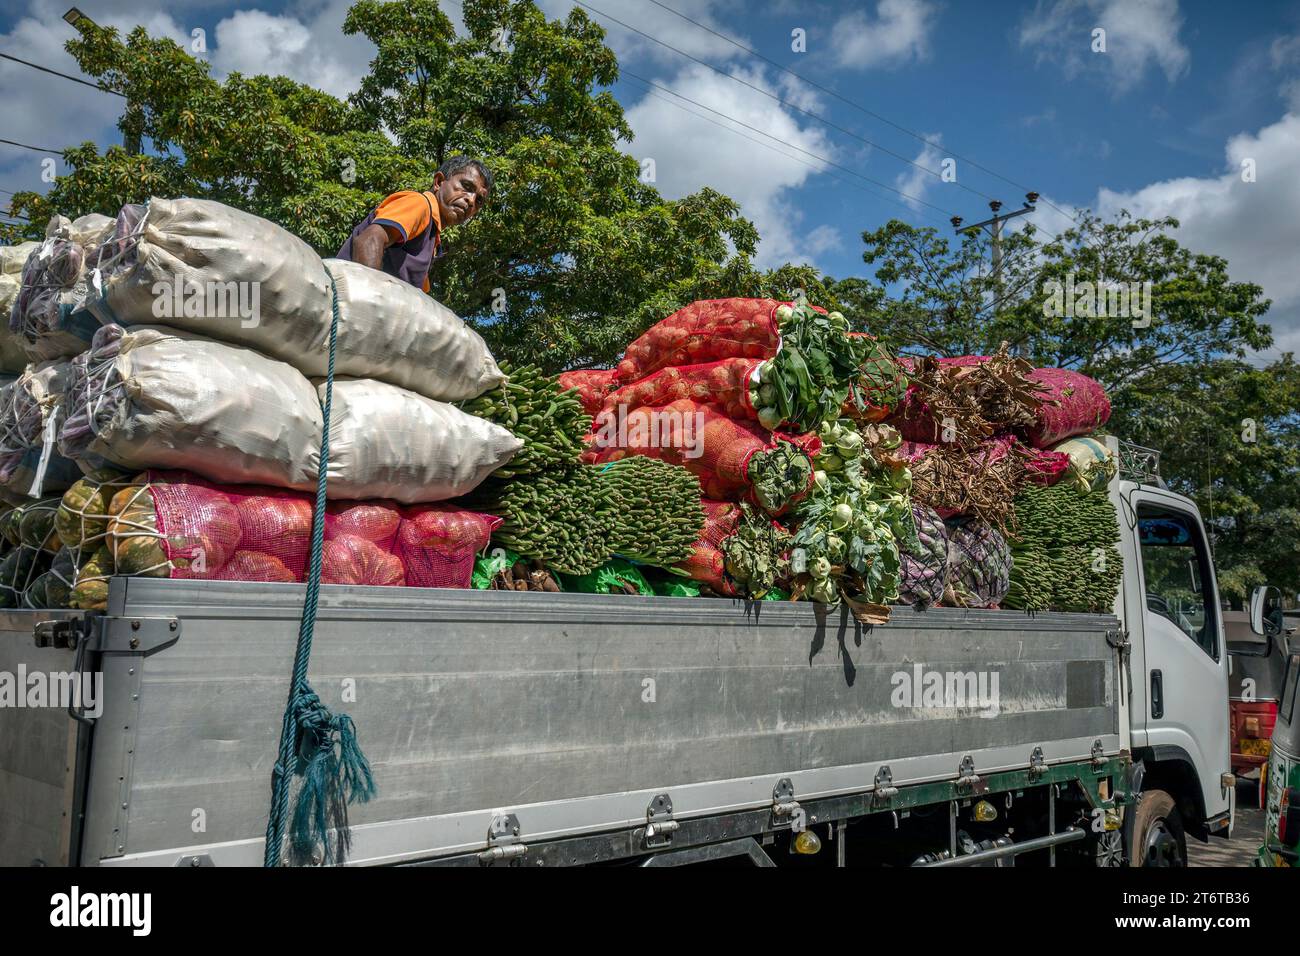 Ein Mann sitzt auf der Rückseite eines Lastwagens mit frischem Obst und Gemüse und wartet darauf, das Dambulla-Wirtschaftszentrum in Sri Lanka zu betreten. Stockfoto